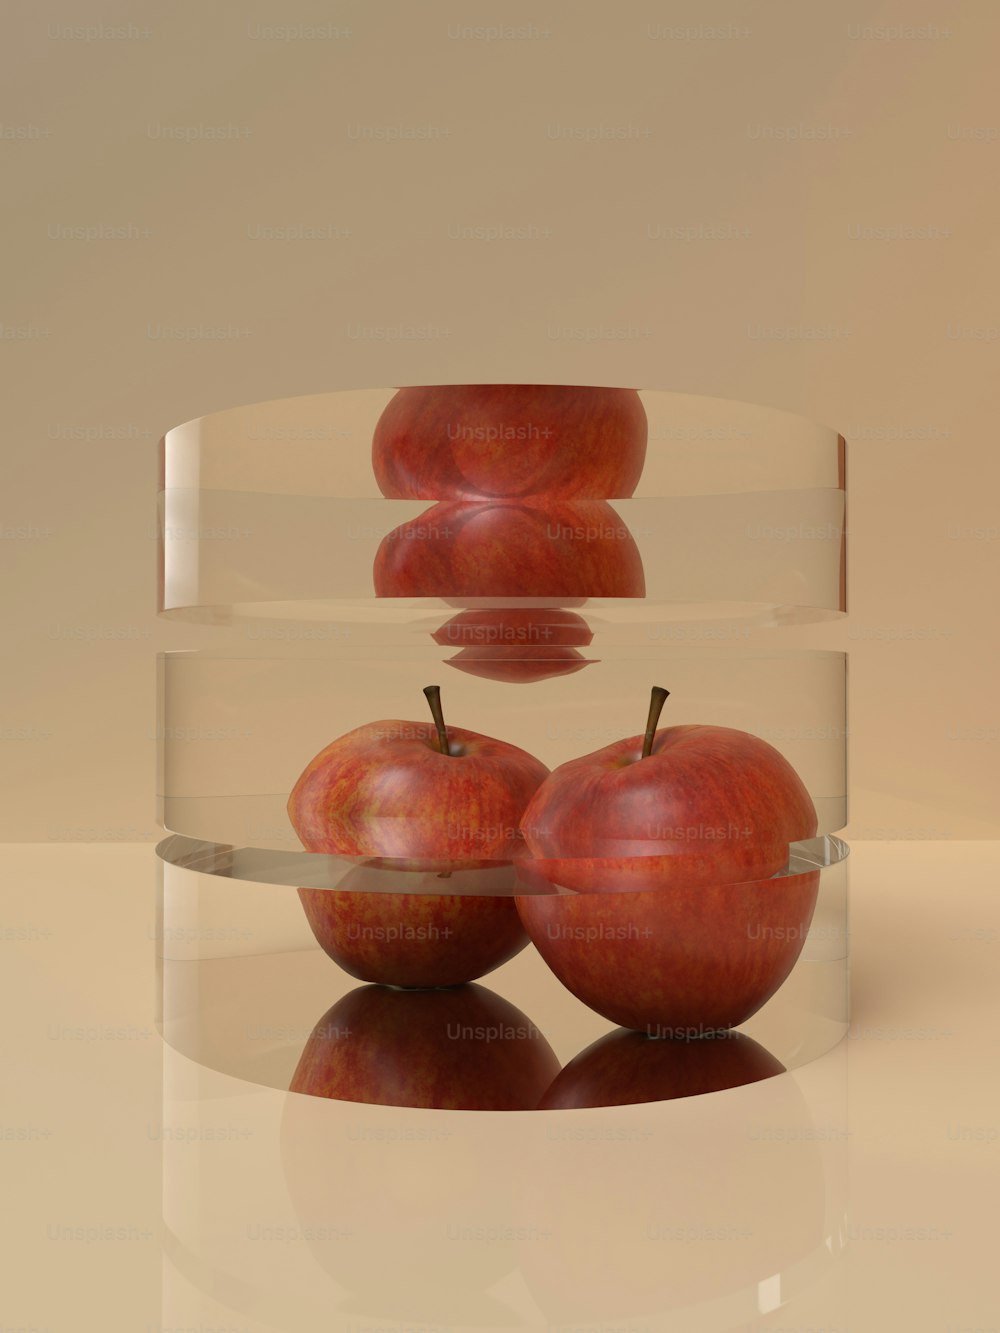 하얀 표면에 투명한 그릇에 담긴 빨간 사과 세 개